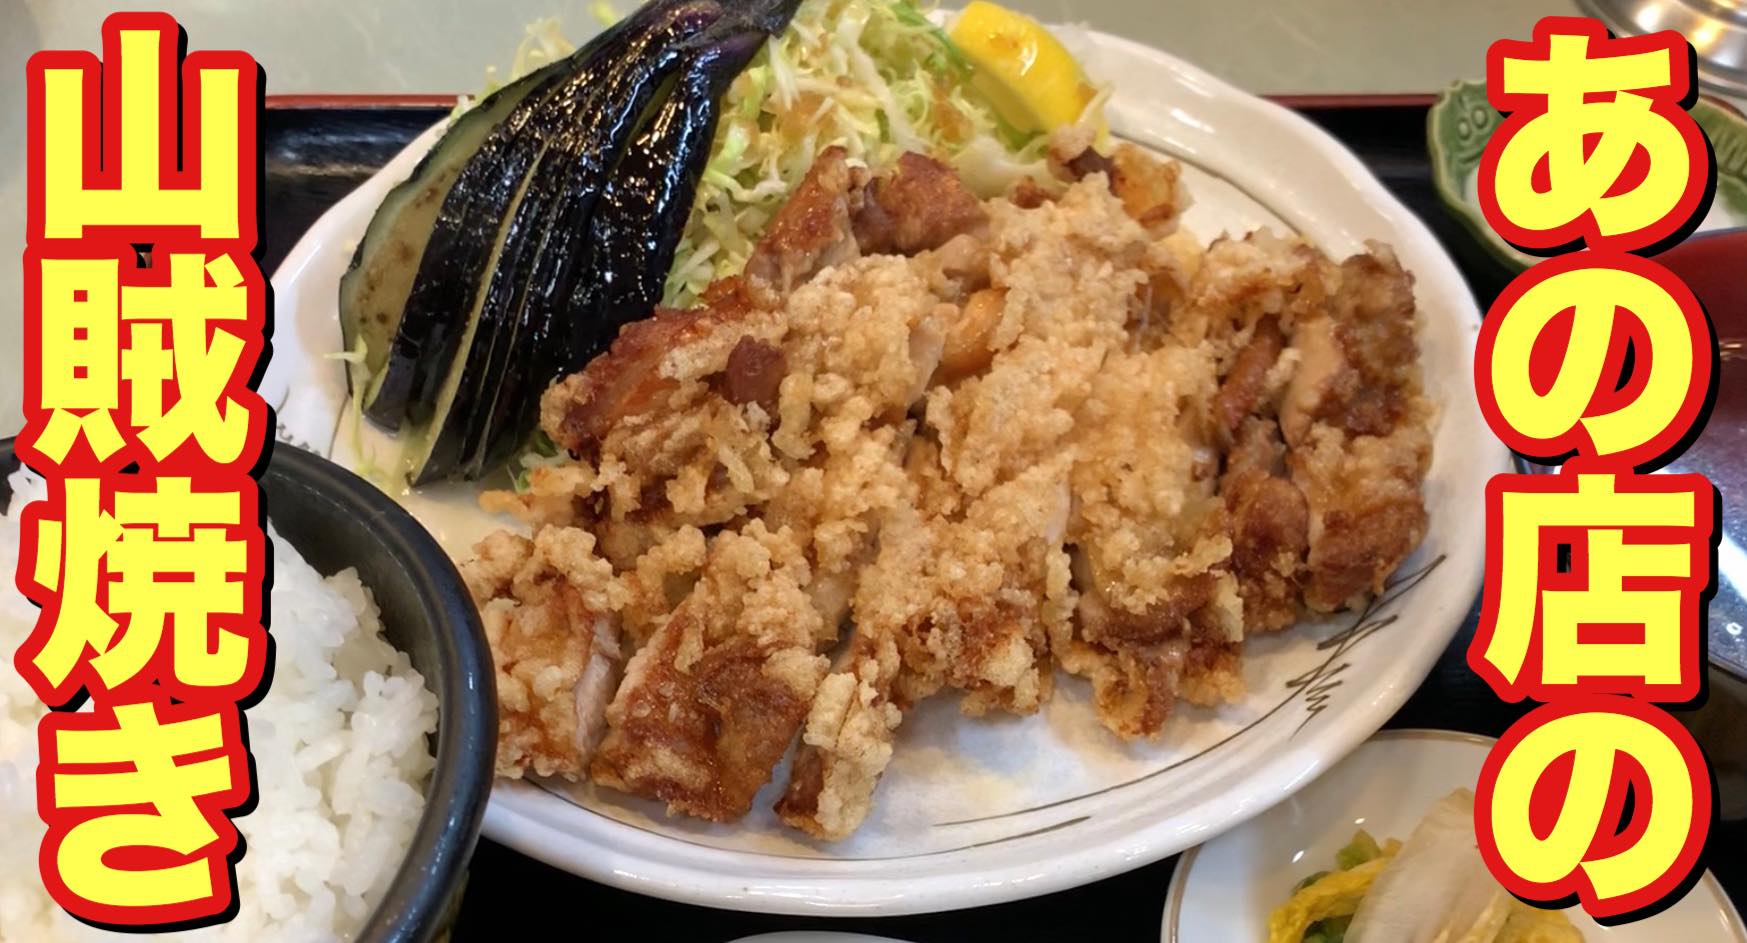 あの店の山賊焼き 老舗のラーメン食堂で人気のがっつり山賊焼き定食 Live On Shinshu